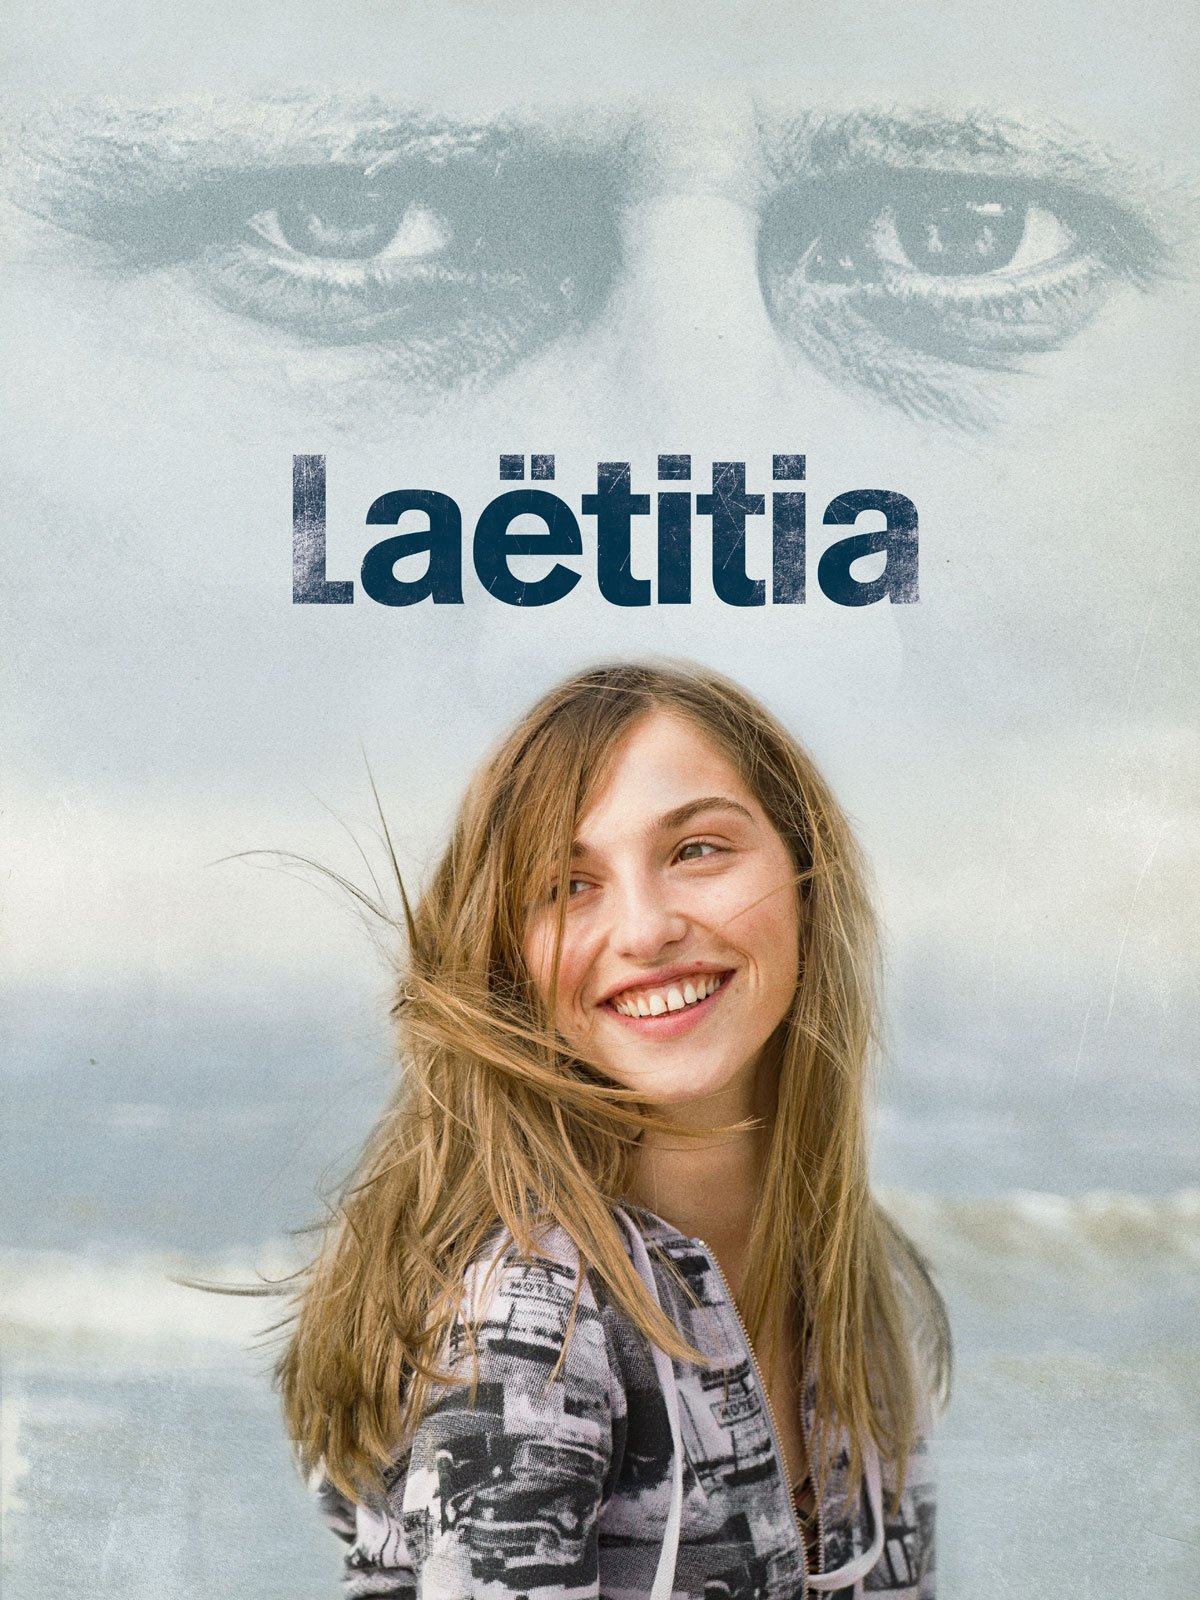 Laëtitia - Saison 1